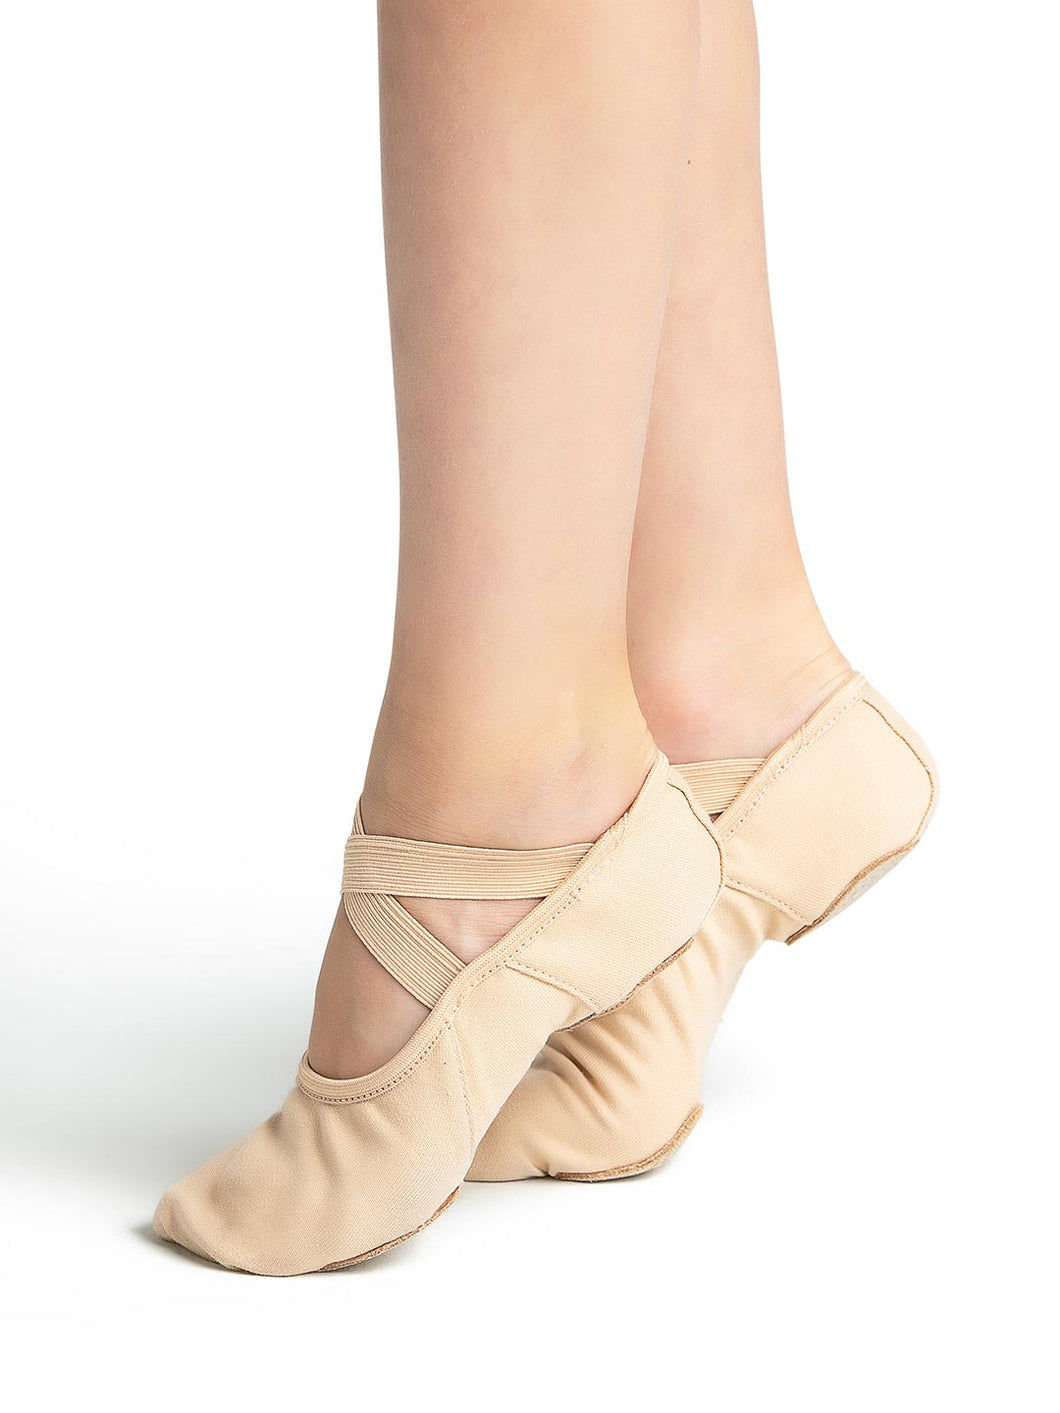 Women's Ballet Shoes by Capezio®